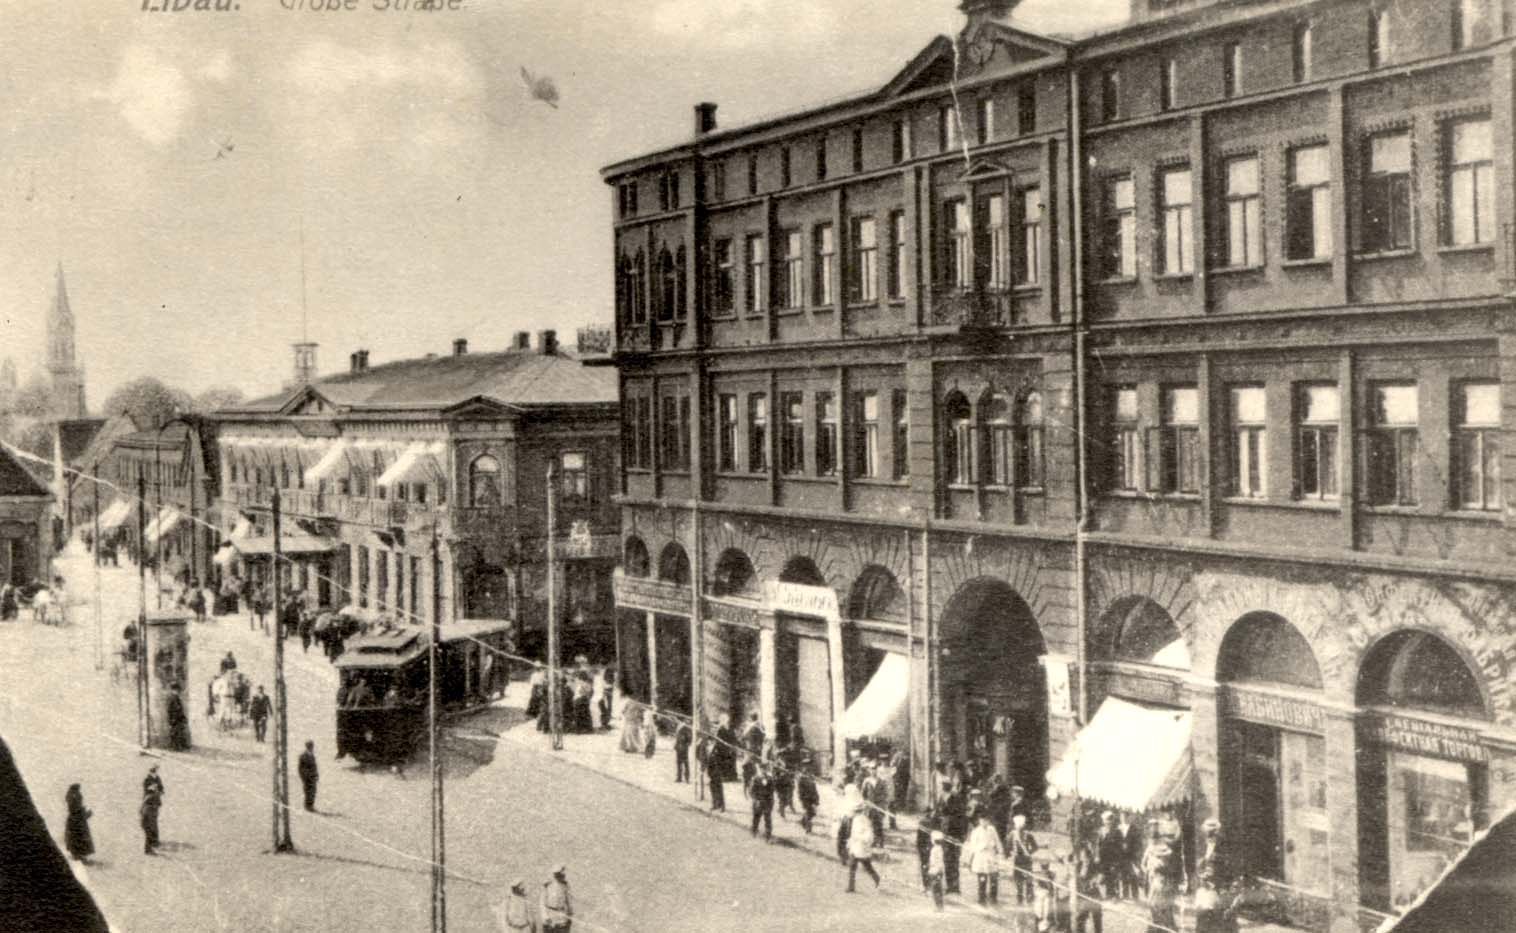 The main street of Liepaja before World War II